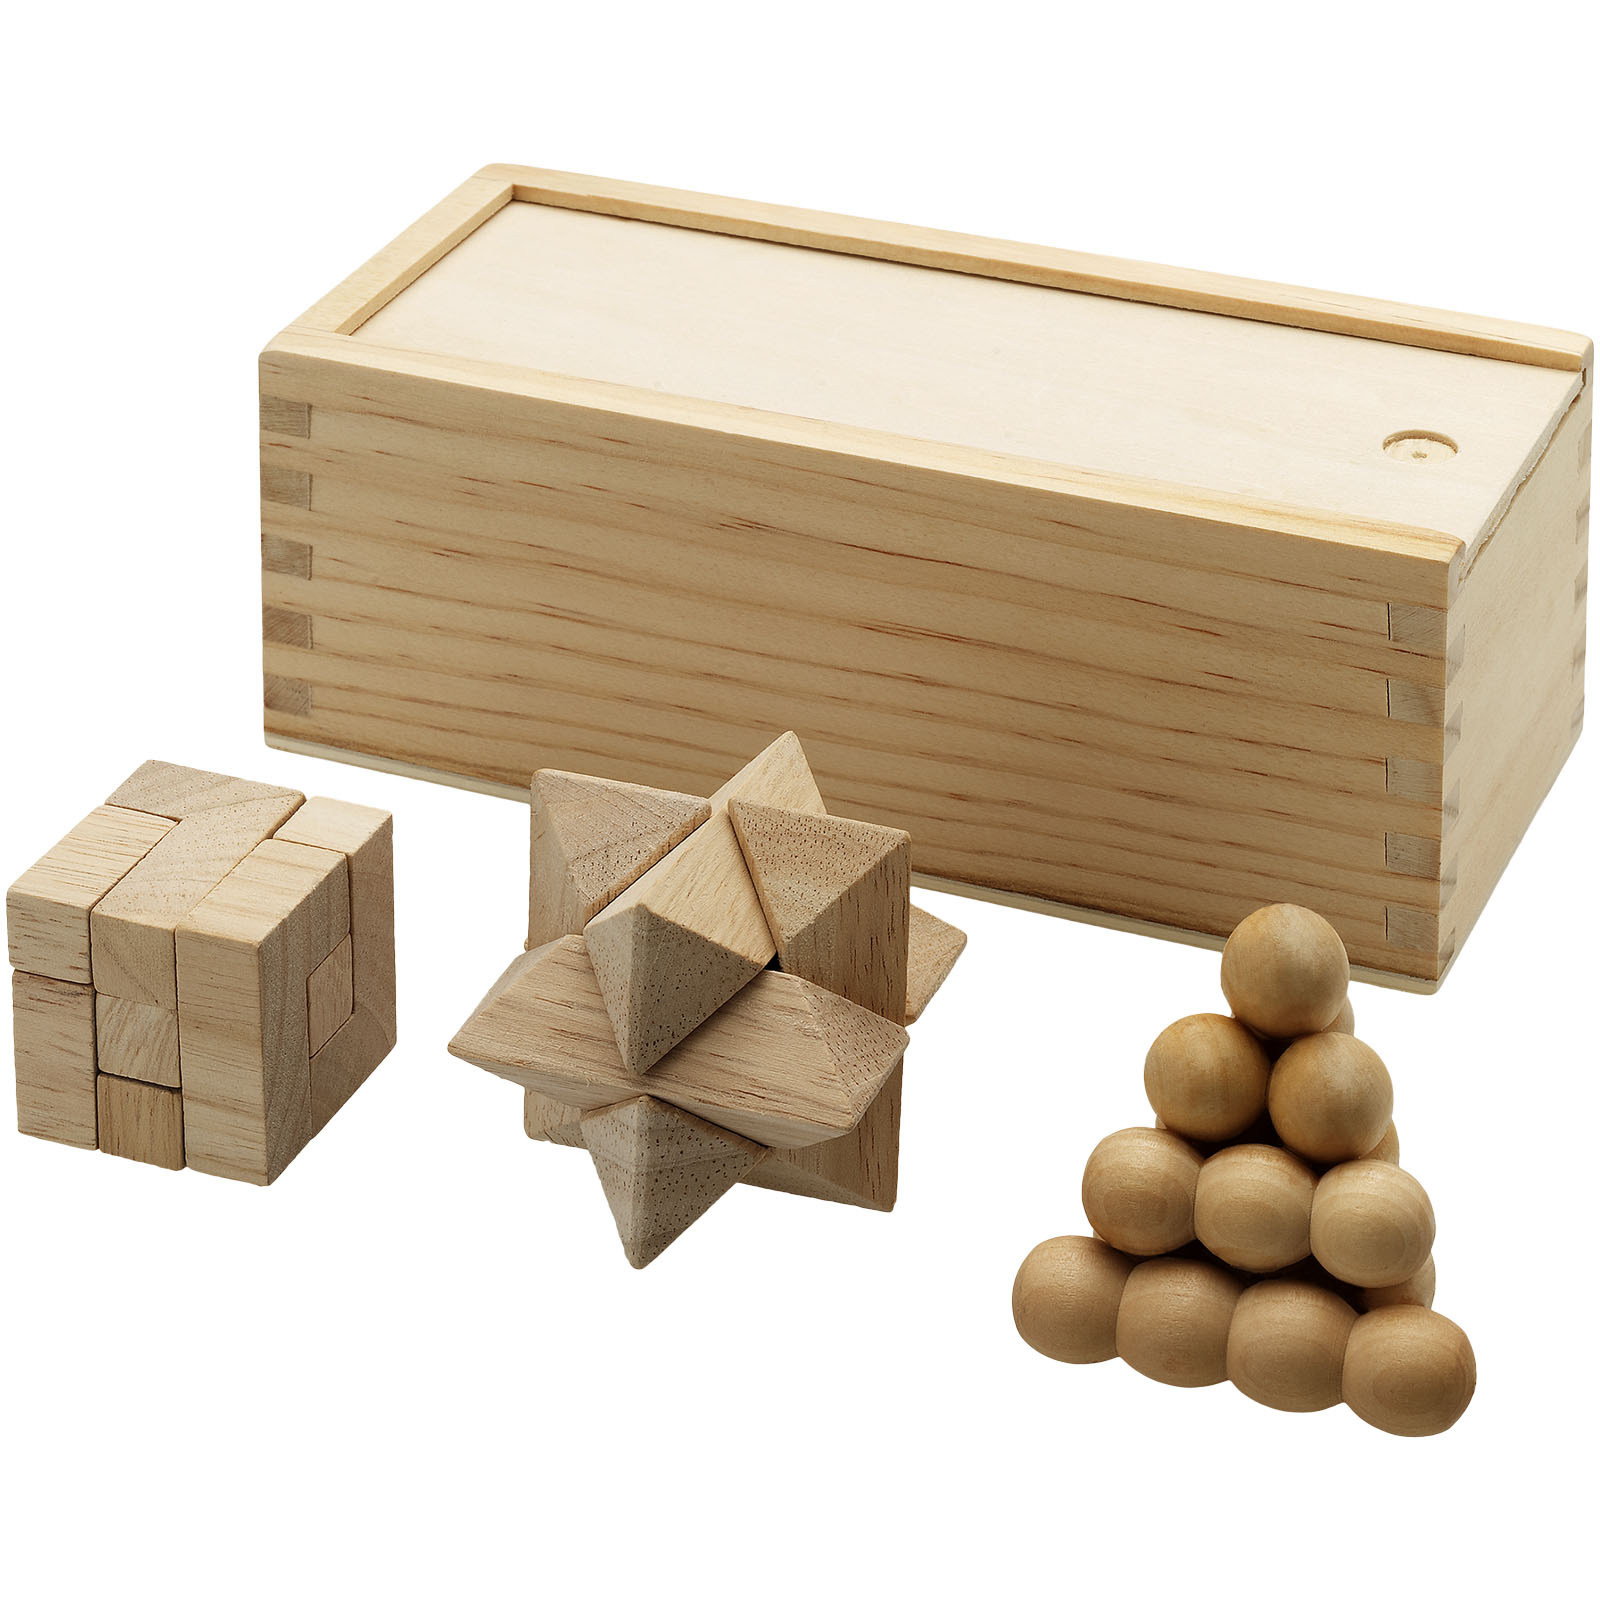 Jeux et jouets - Casse-tête chinois Brainiac 3 pièces en bois